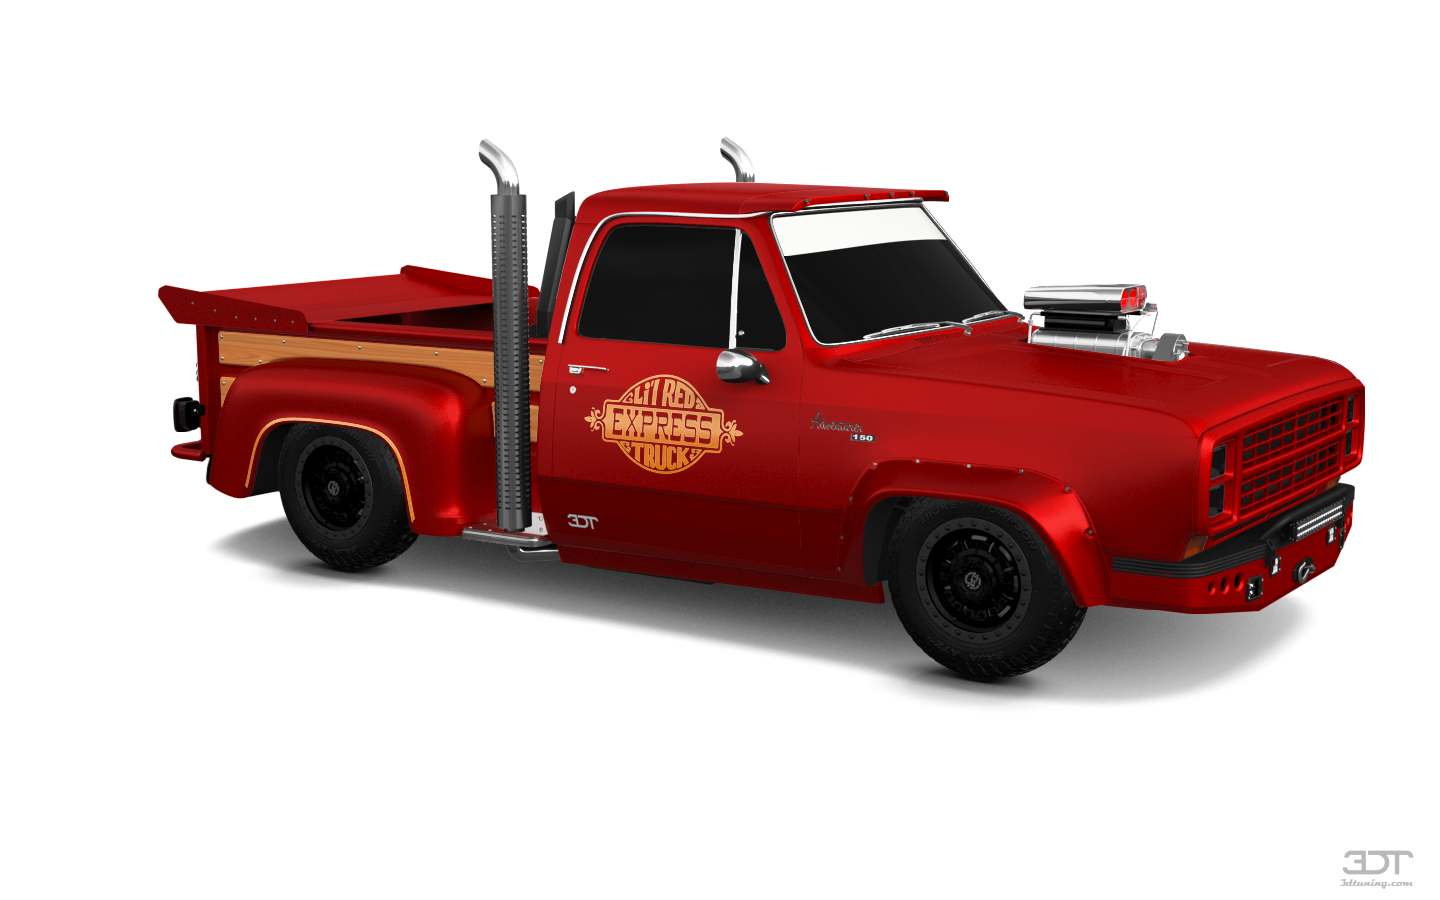 Dodge Lil Red Express 2 Door pickup truck 1979